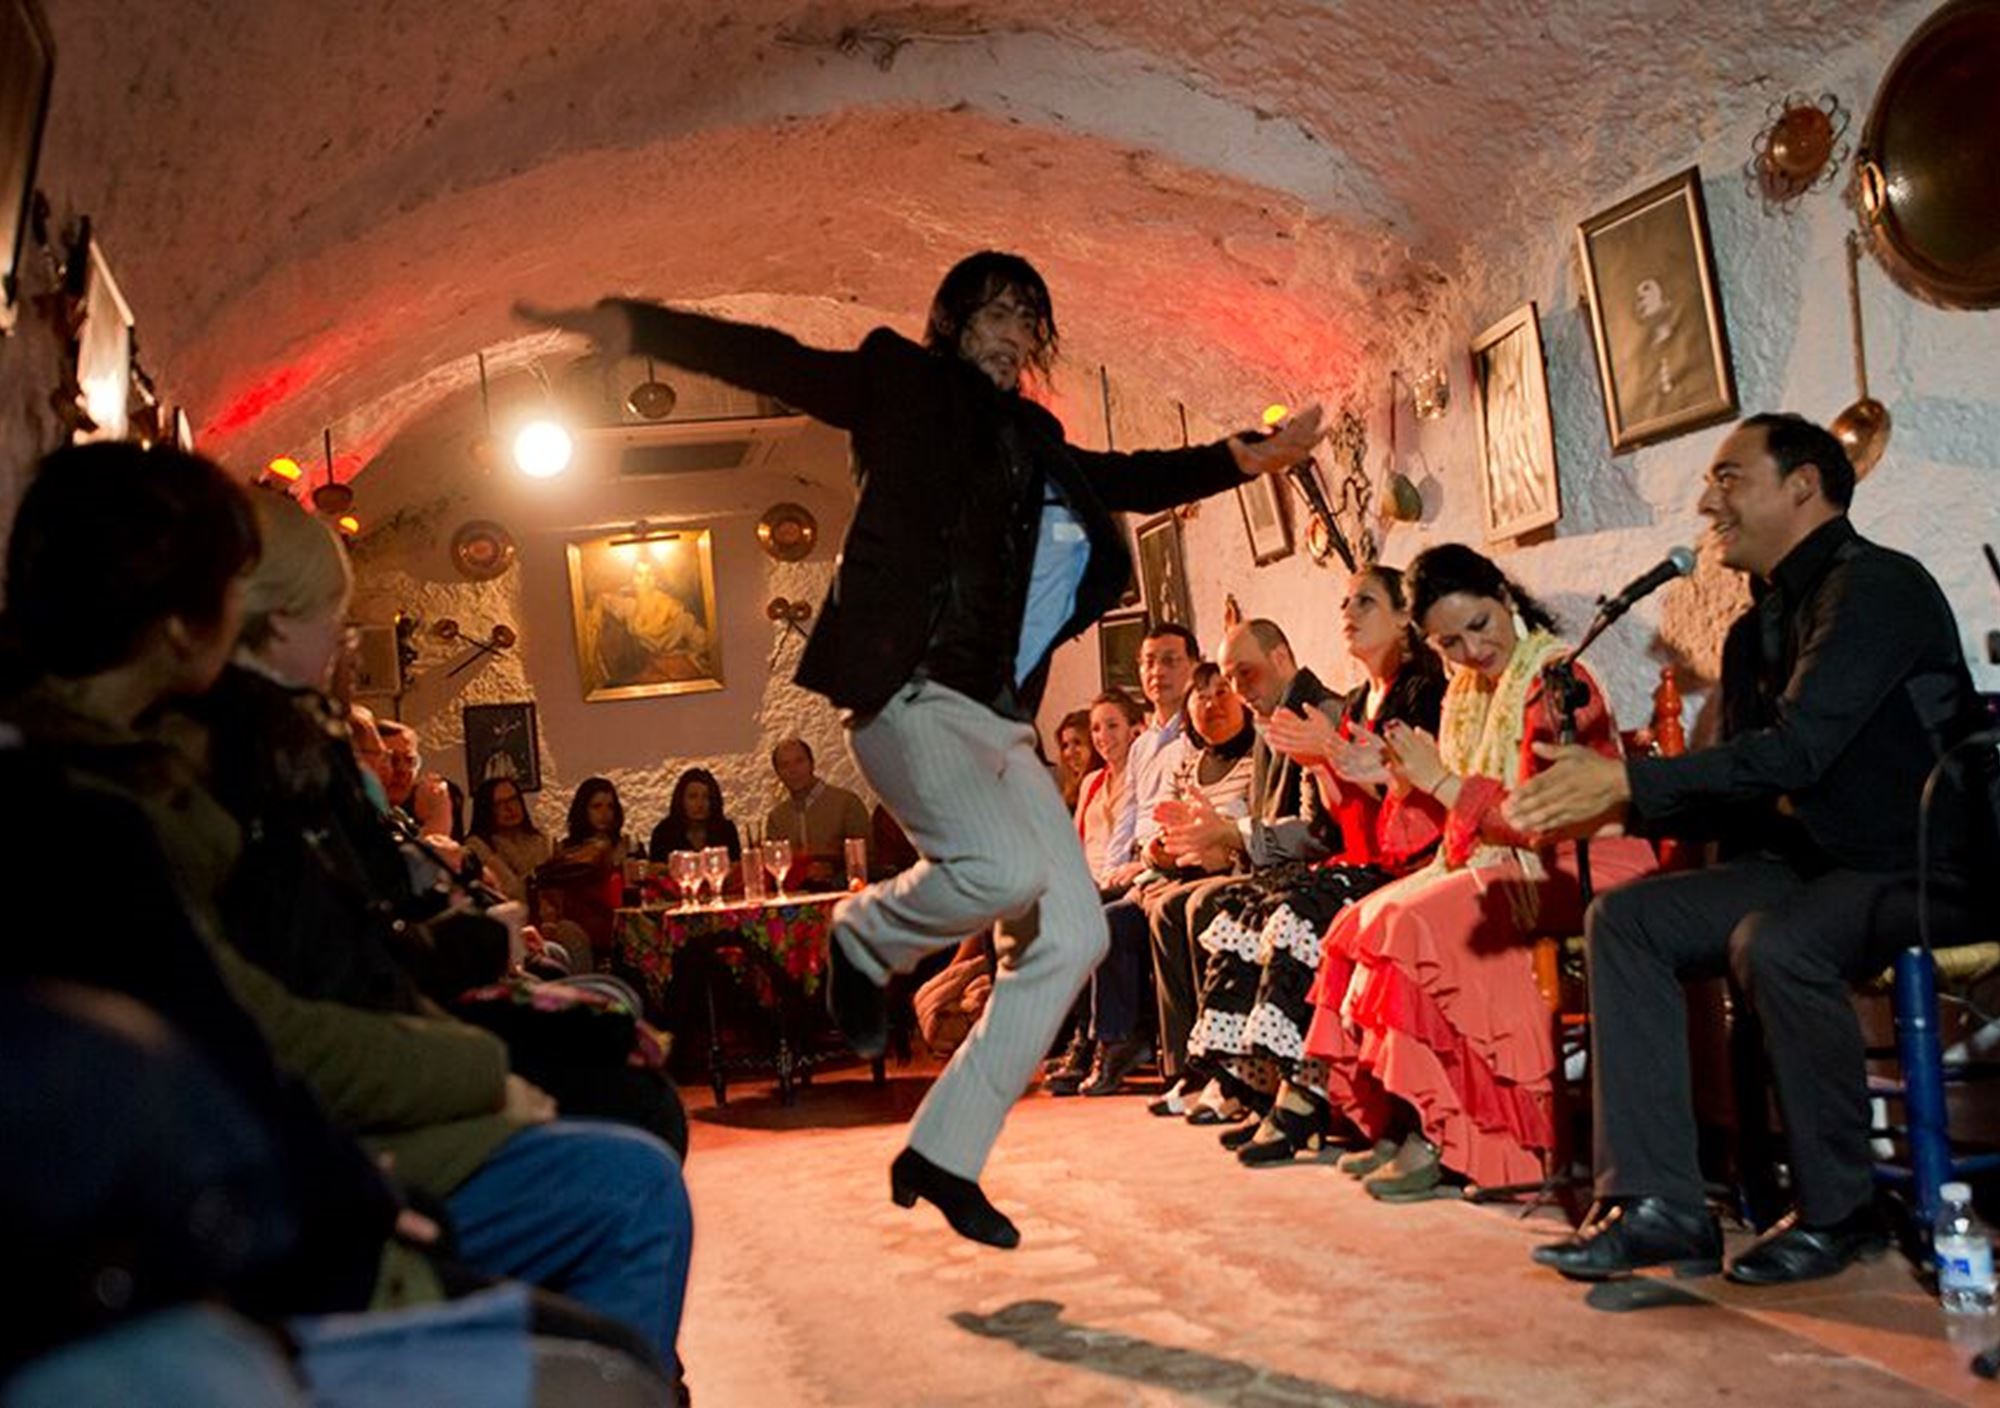 acheter spectacle tablao grotte Zambra flamenco Cuevas Los Tarantos billets visiter grenade